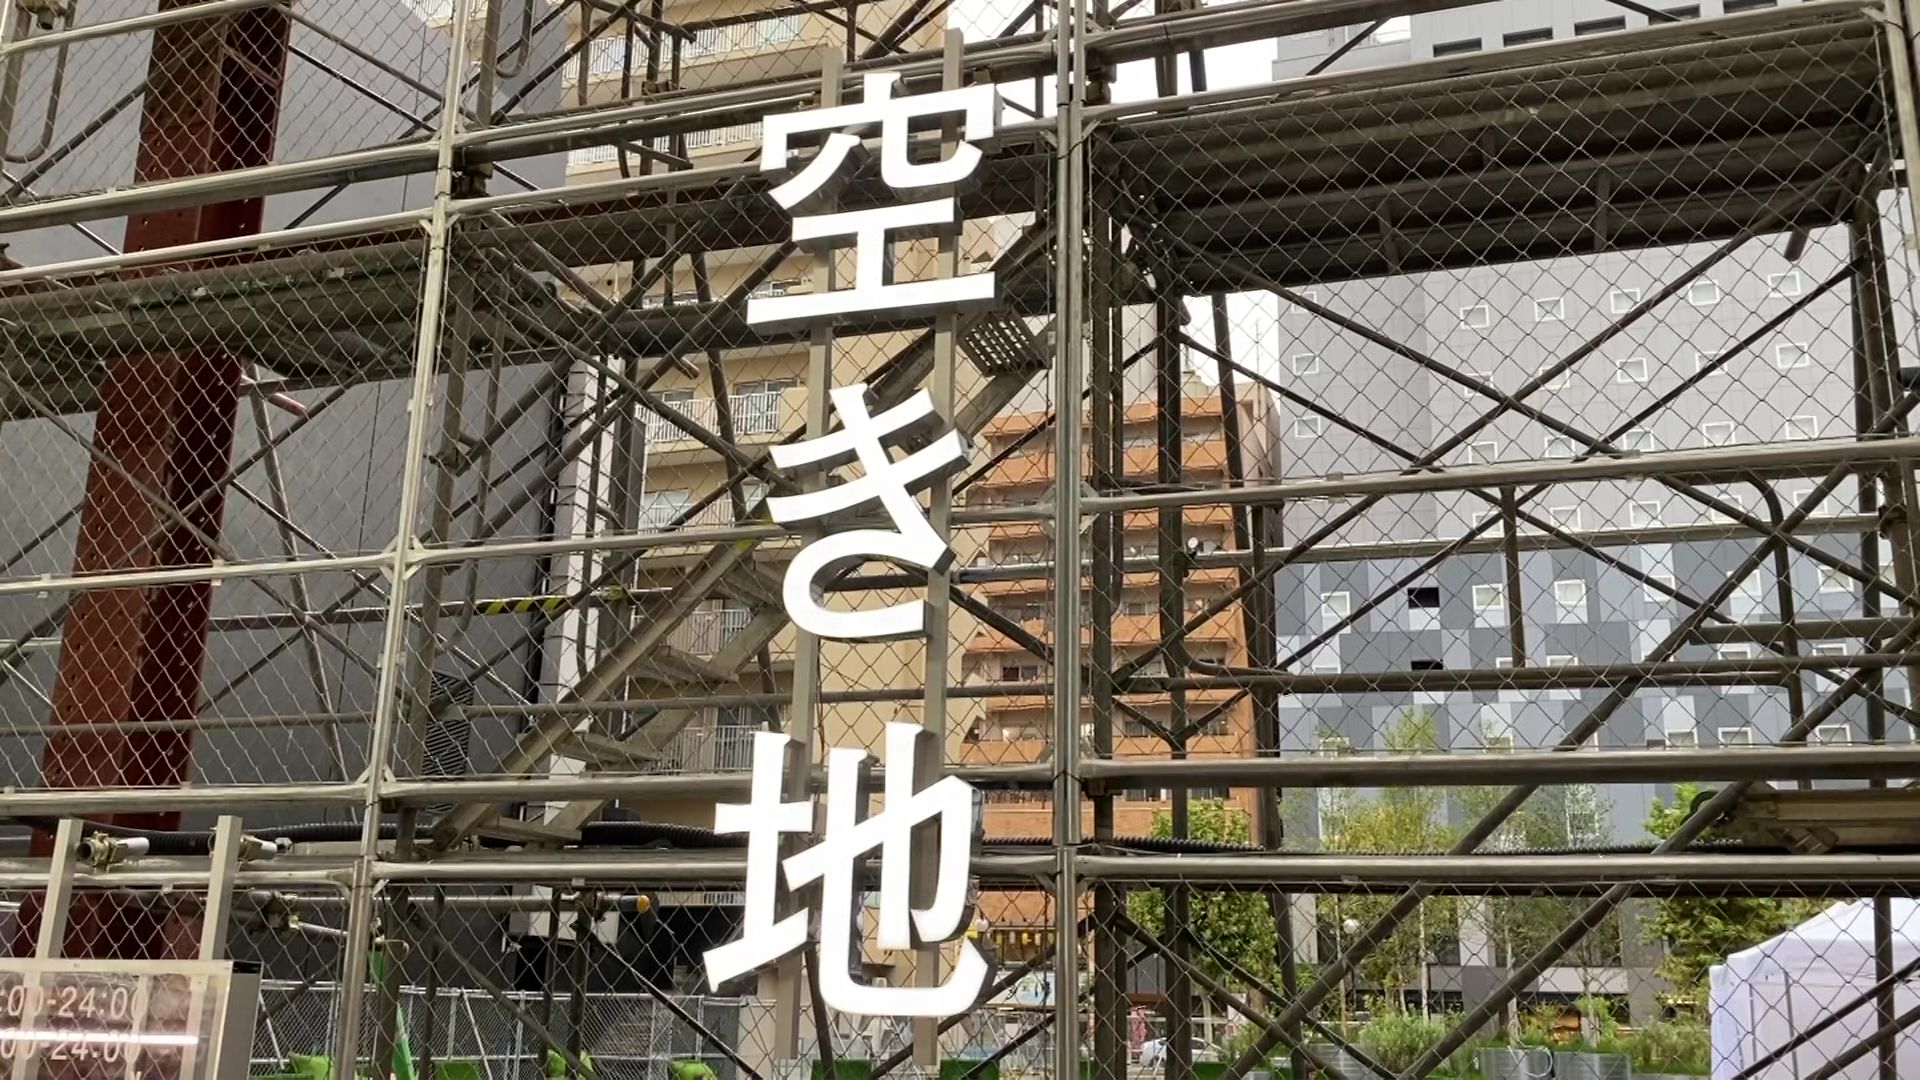 【密着】狸小路に「空き地」が出現 再開発進む札幌であえてビルを建てず